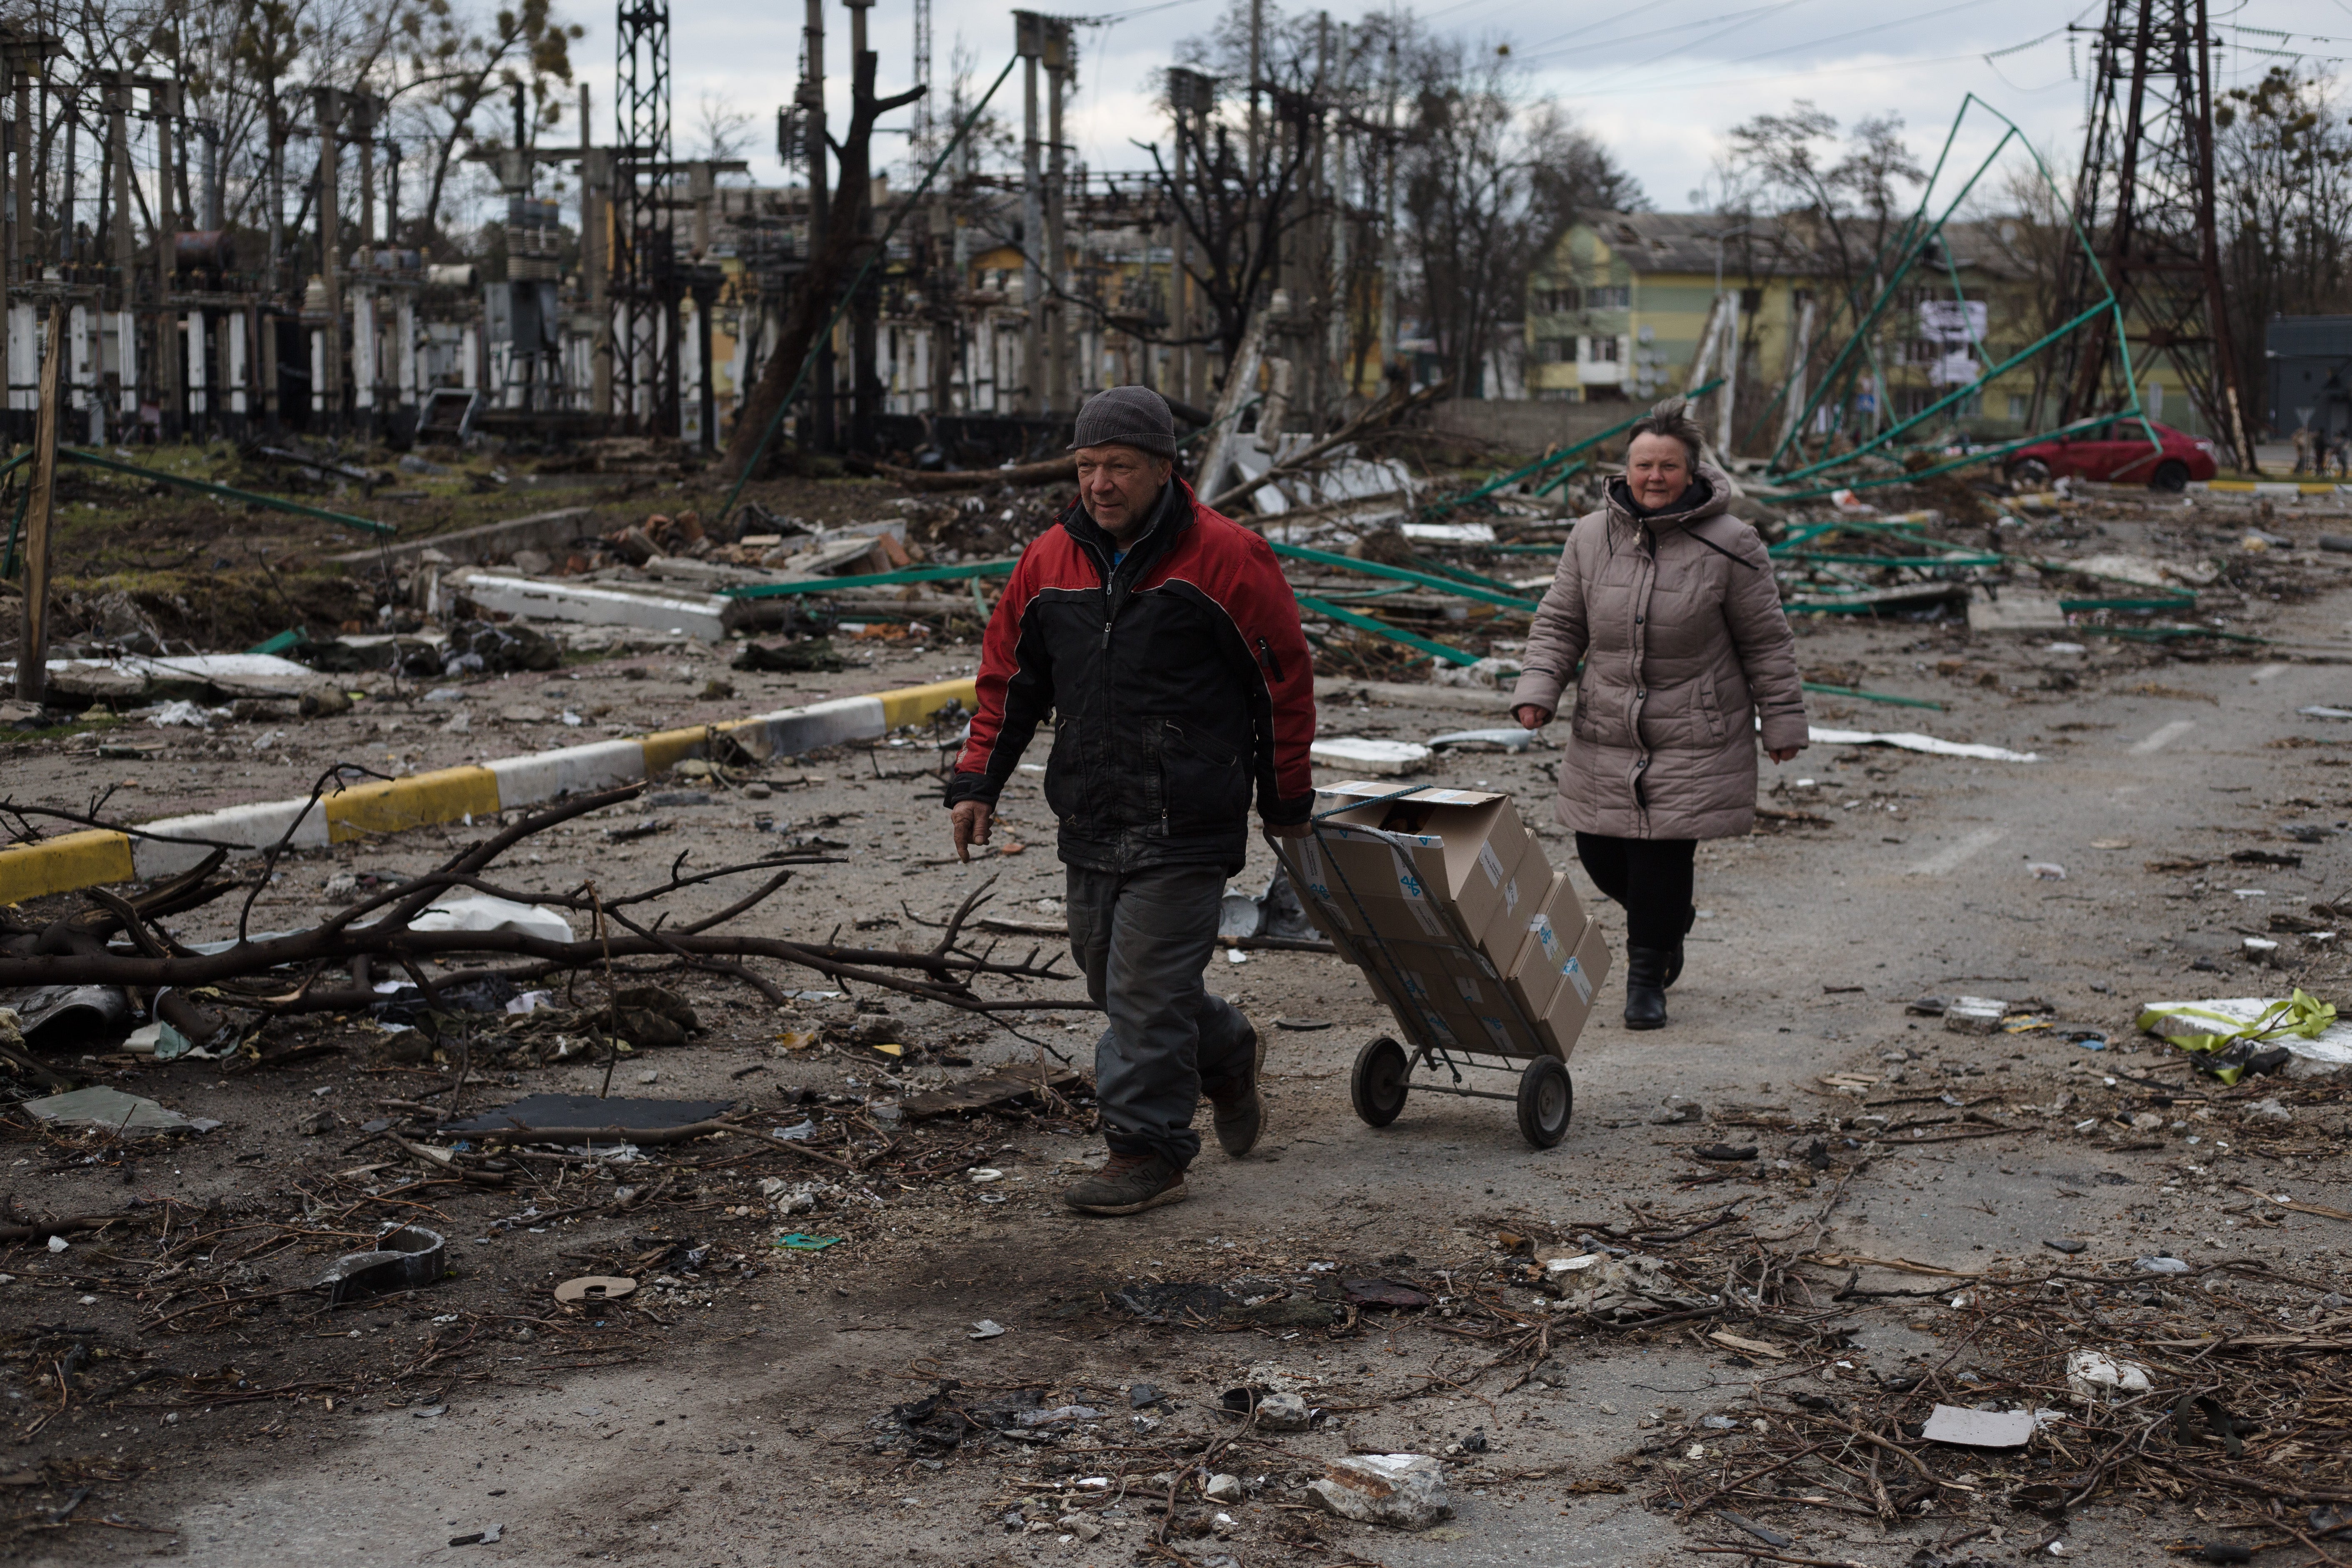 El gobierno de Ucrania acusó a las fuerzas rusas de cometer una “masacre deliberada” al ocupar Bucha